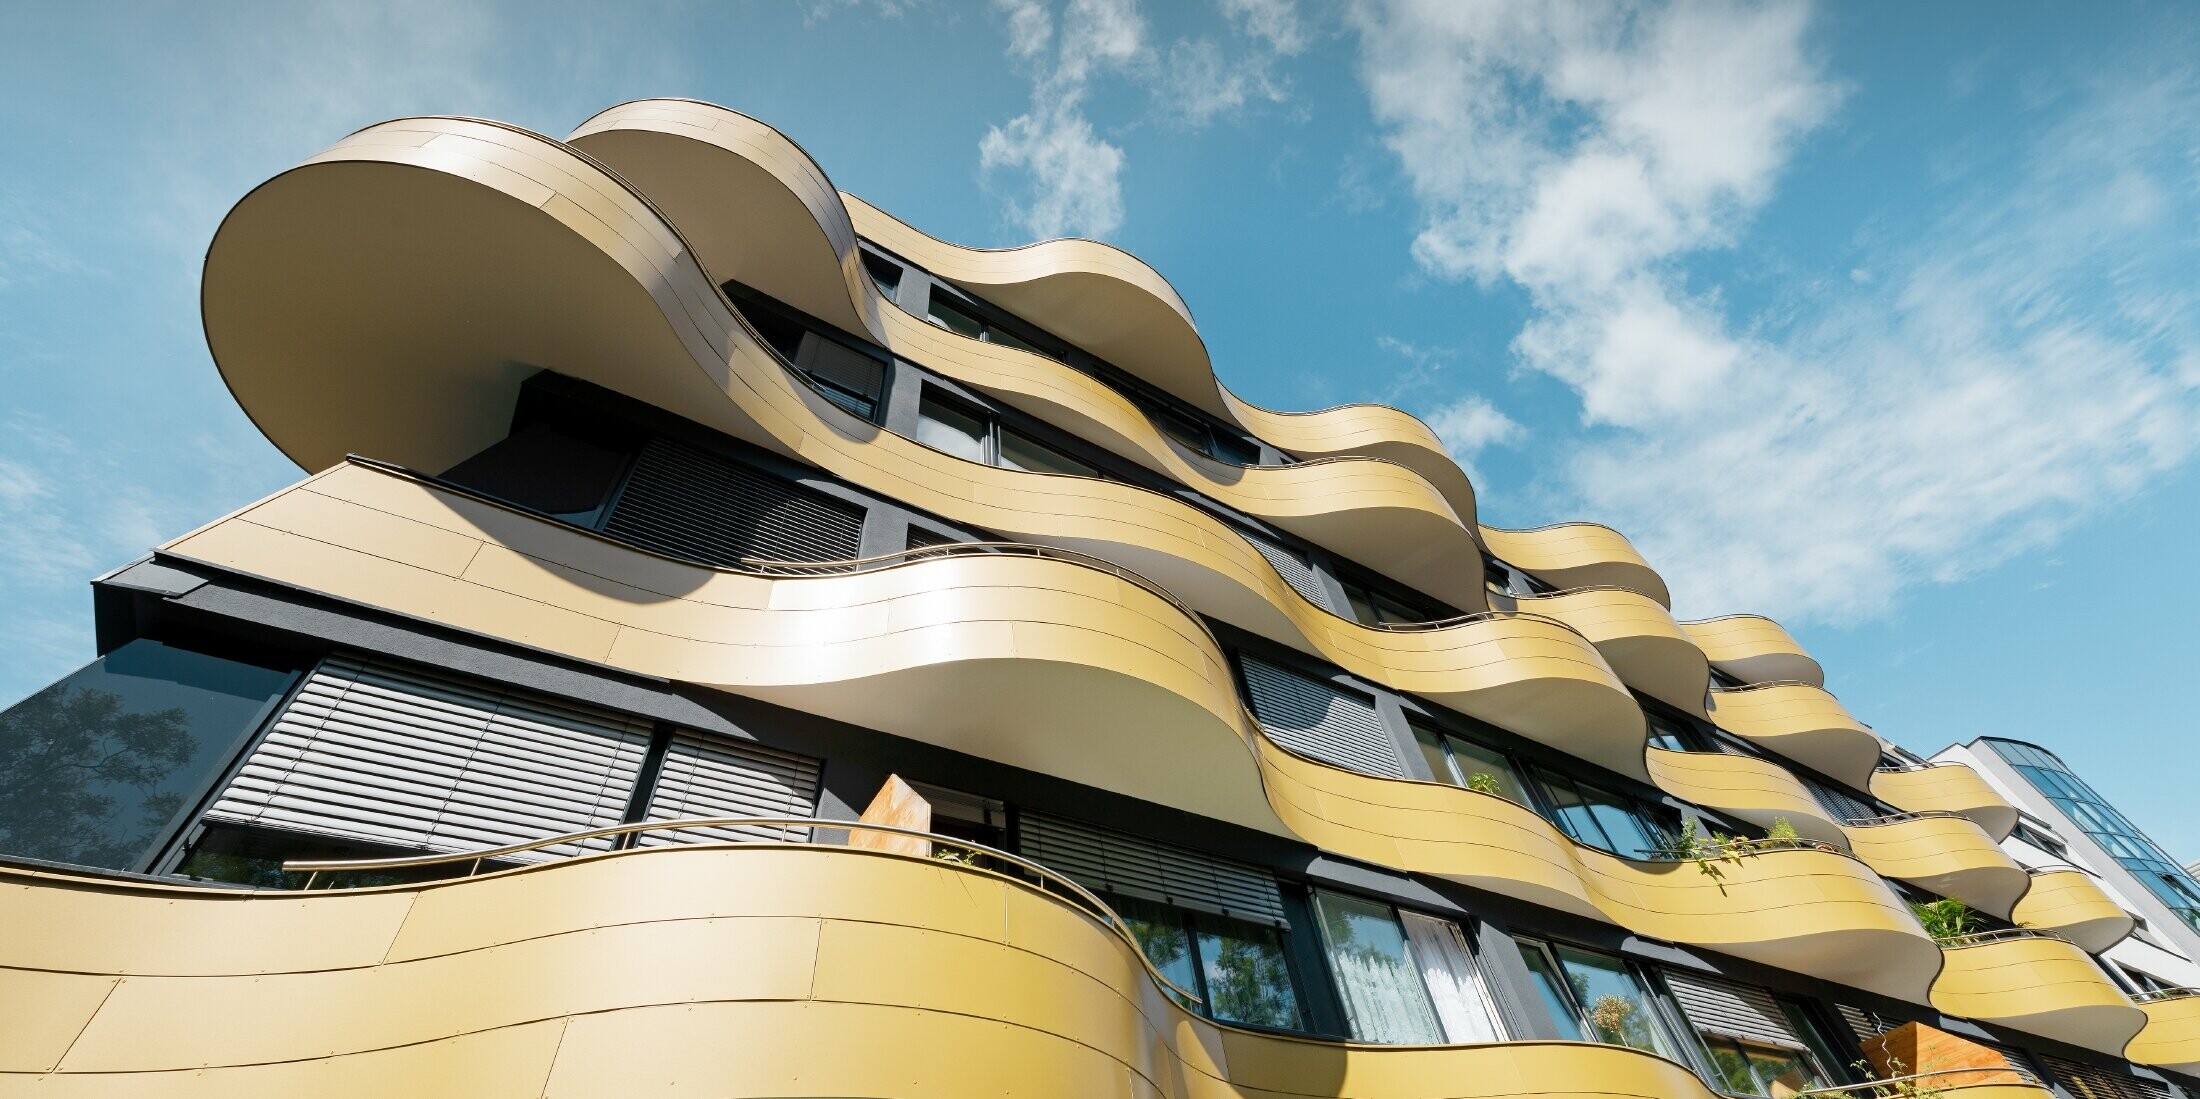 Ansicht von unten der goldenen Balkone in Graz, die mit PREFA Alu Verbundplatten verkleidet wurden